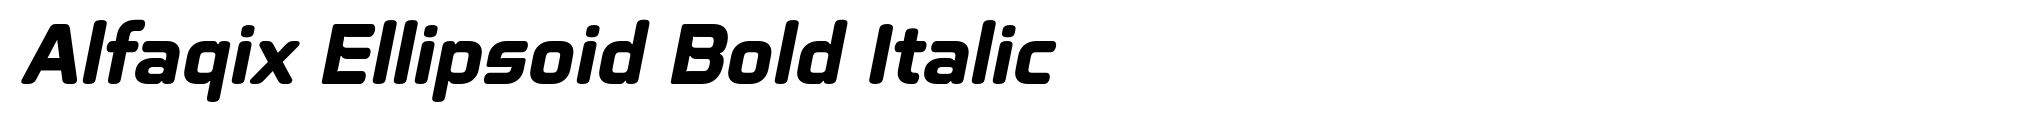 Alfaqix Ellipsoid Bold Italic image